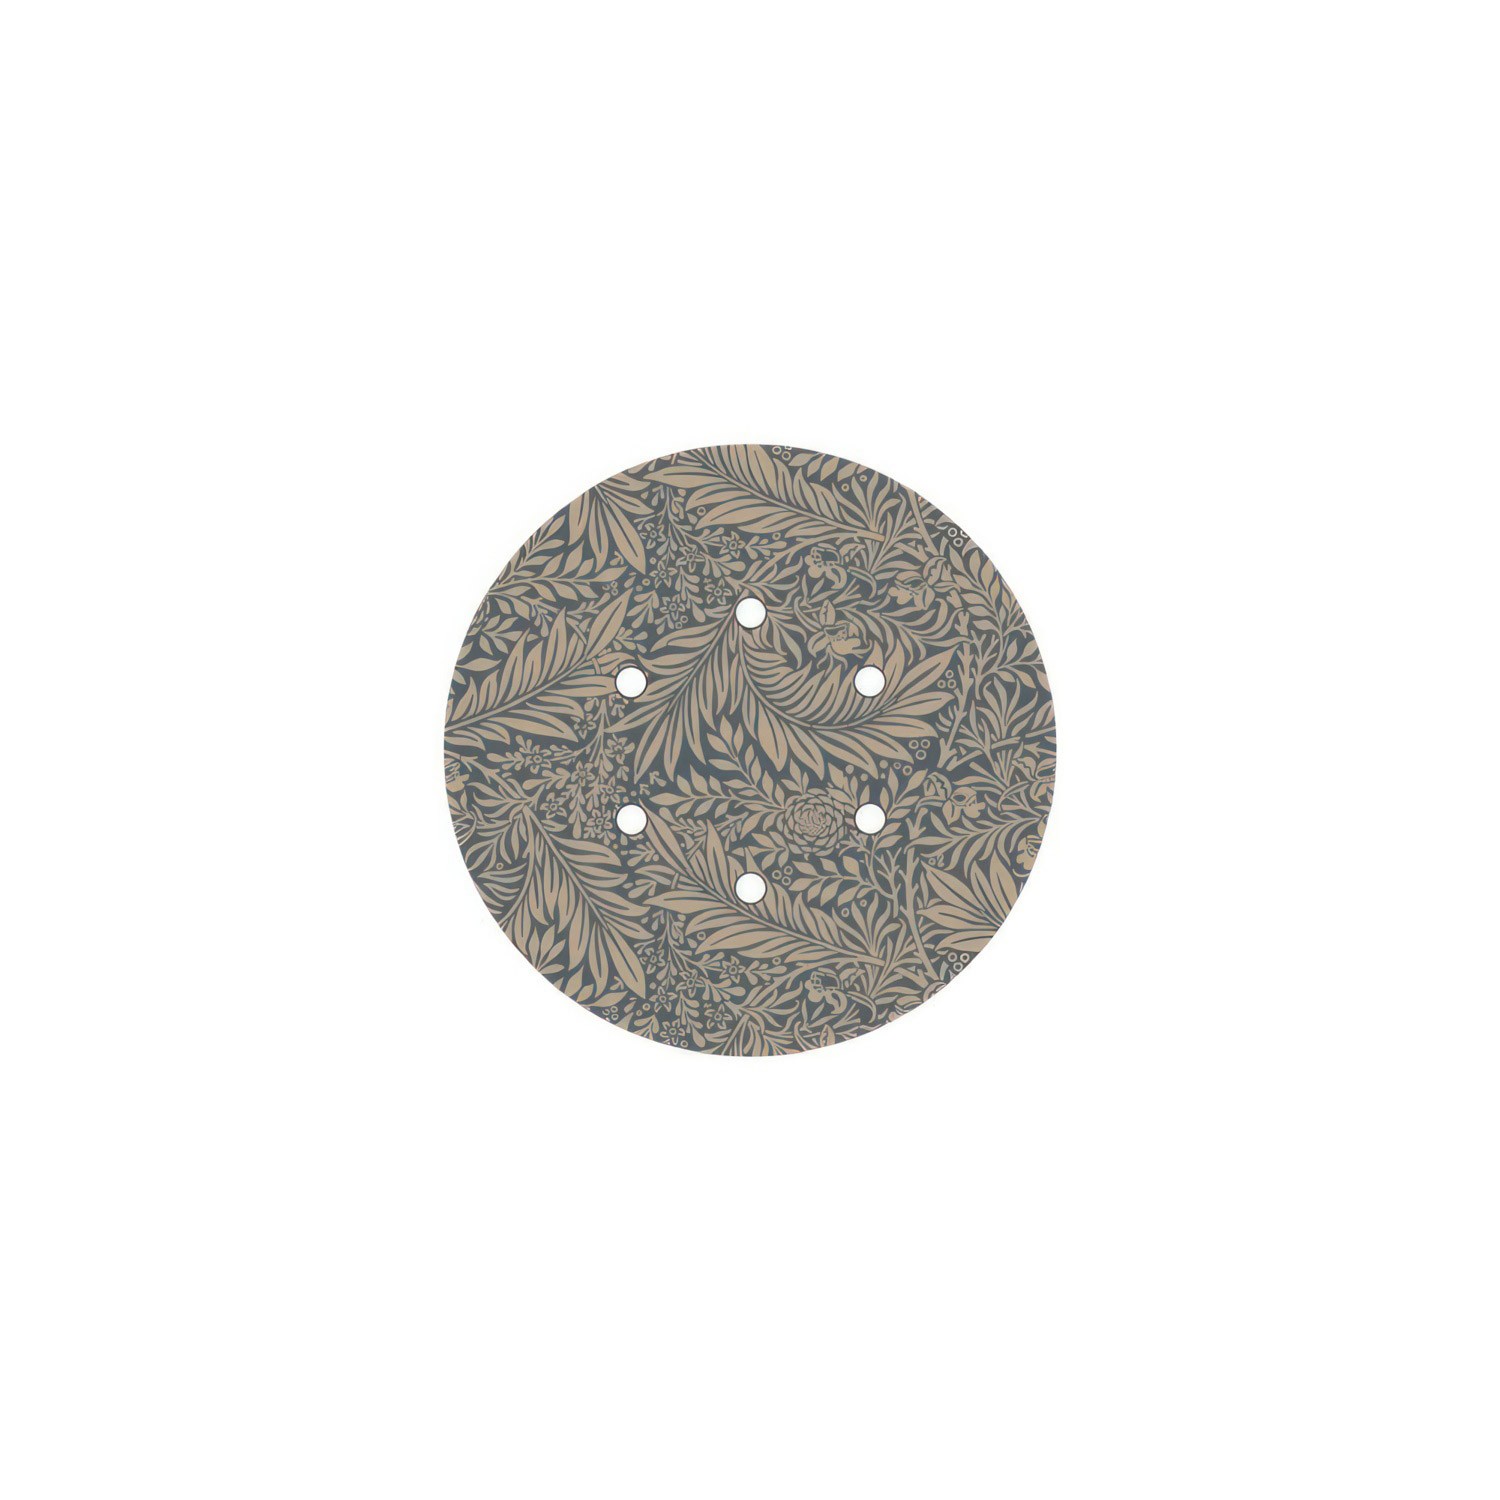 Rundes 6-Loch und 4 Seitenlöchern Lampenbaldachin, Rose-One-Abdeckung, 200 mm Durchmesser - PROMO